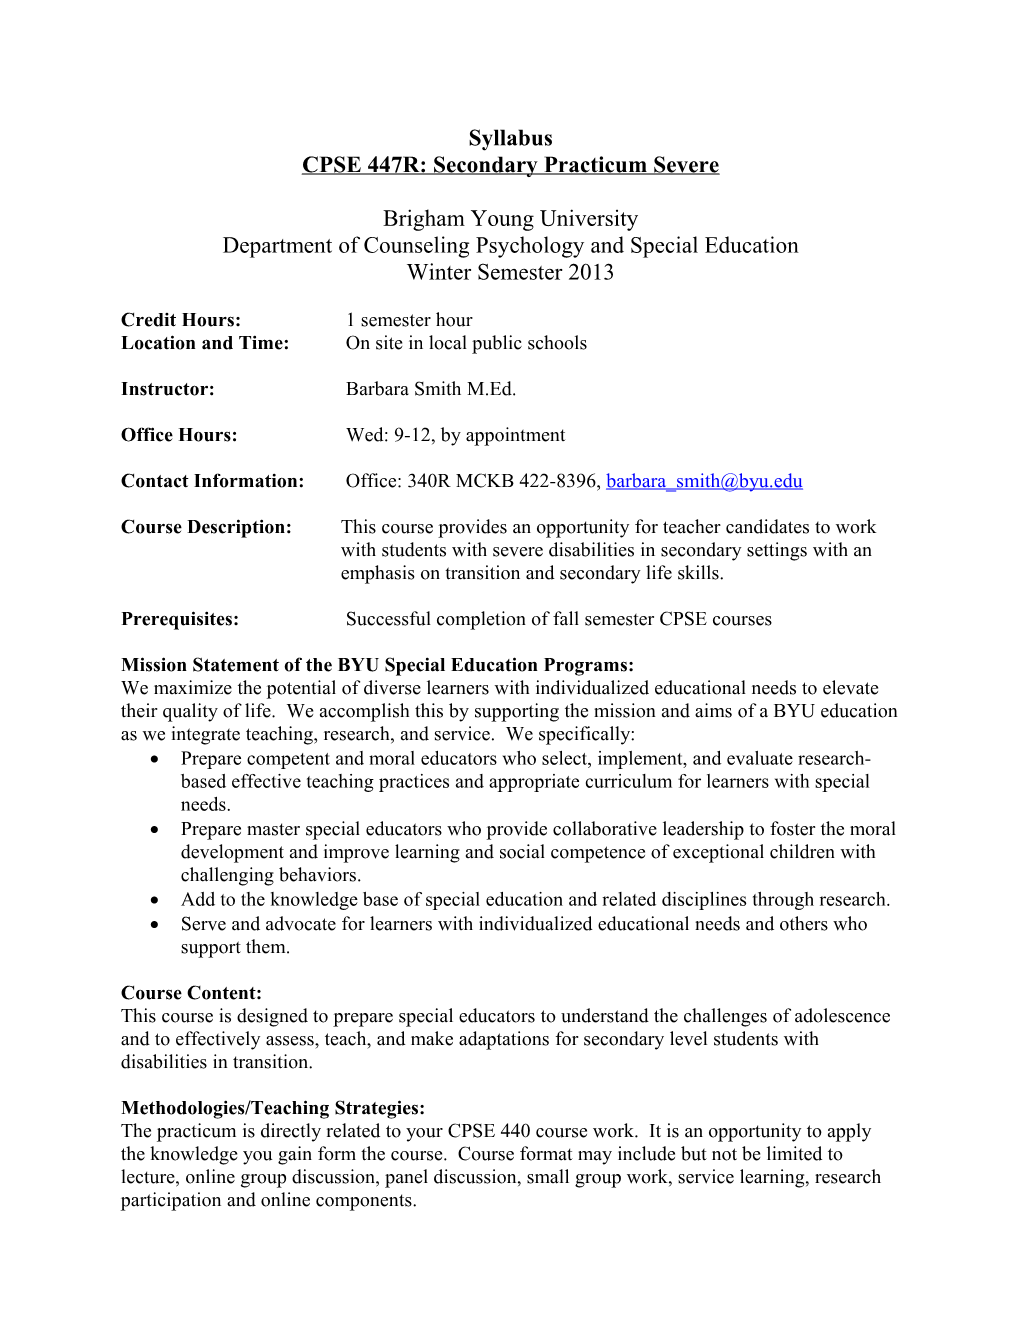 CPSE 447R: Secondary Practicum Severe